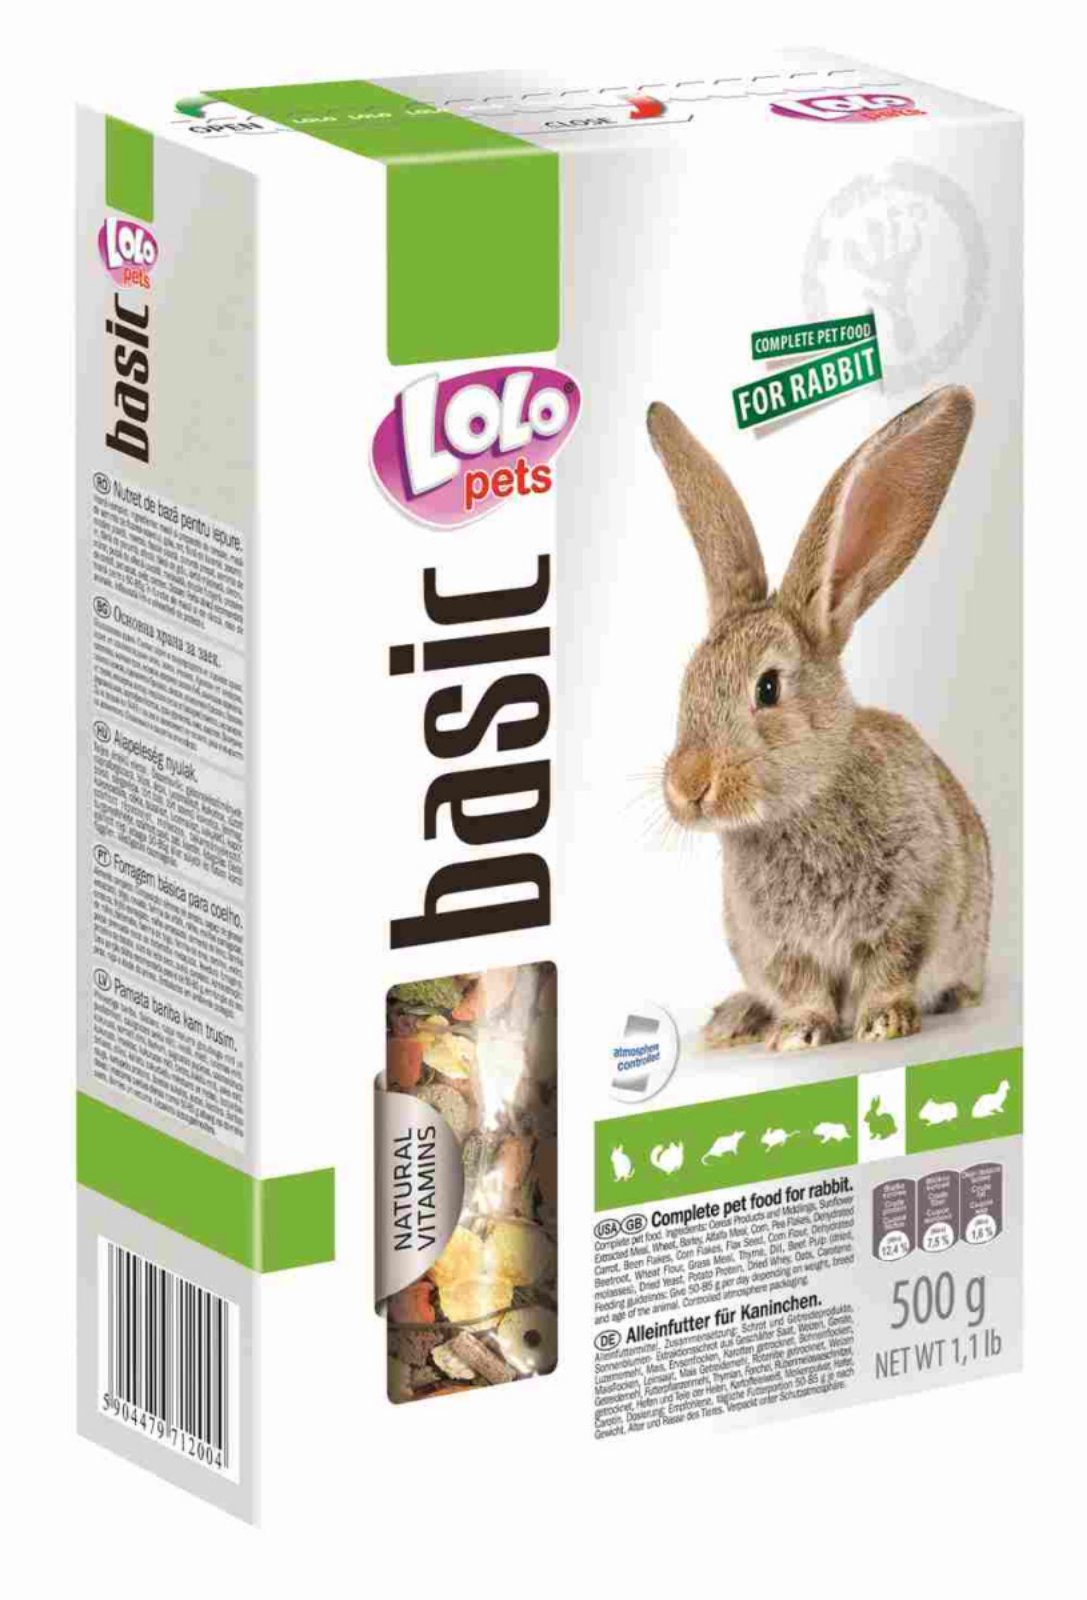  LoLo Pets  - повнораціонний корм для кролика